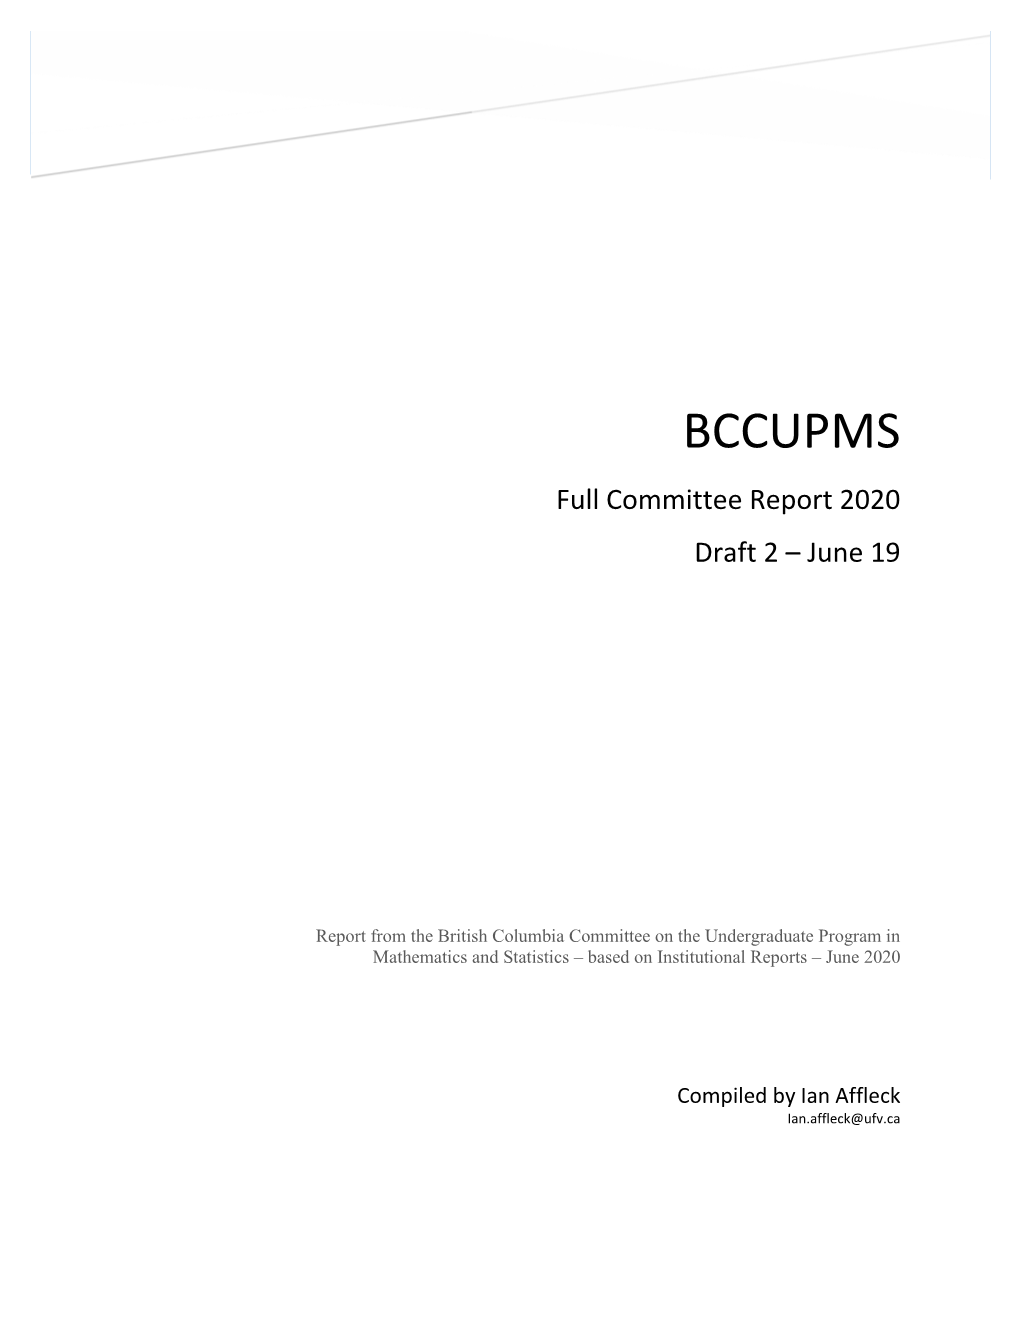 Full Committee Report 2020 Draft 2 – June 19